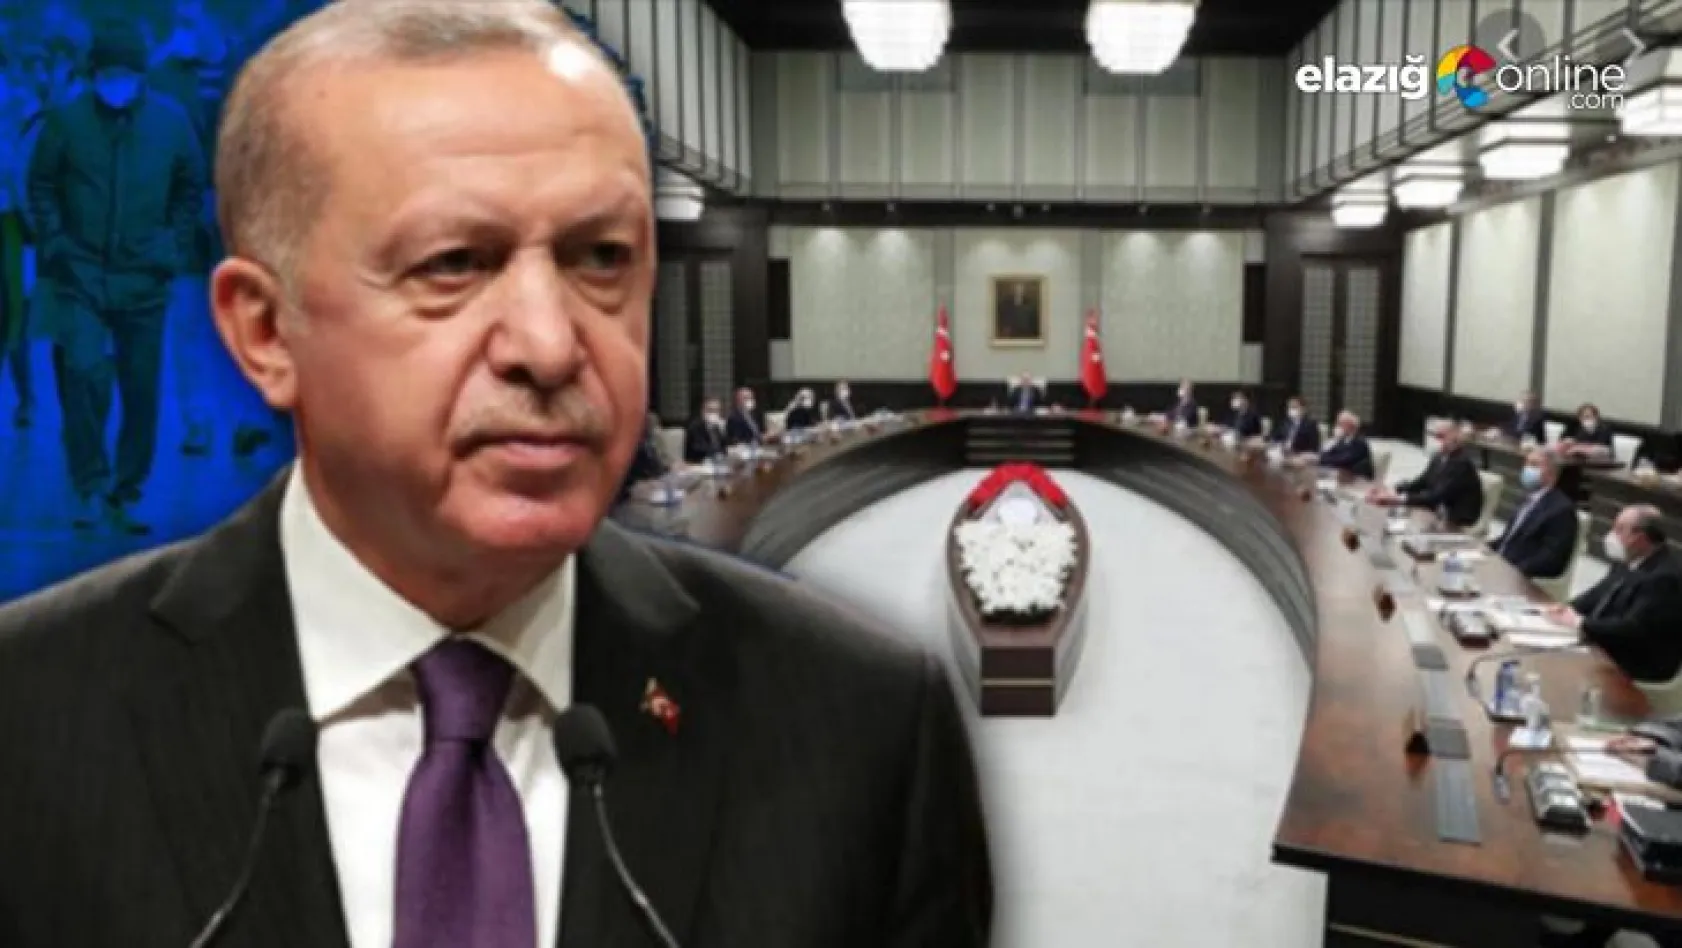 Milyonların gözü Erdoğan'ın başkanlık edeceği bu toplantıda!